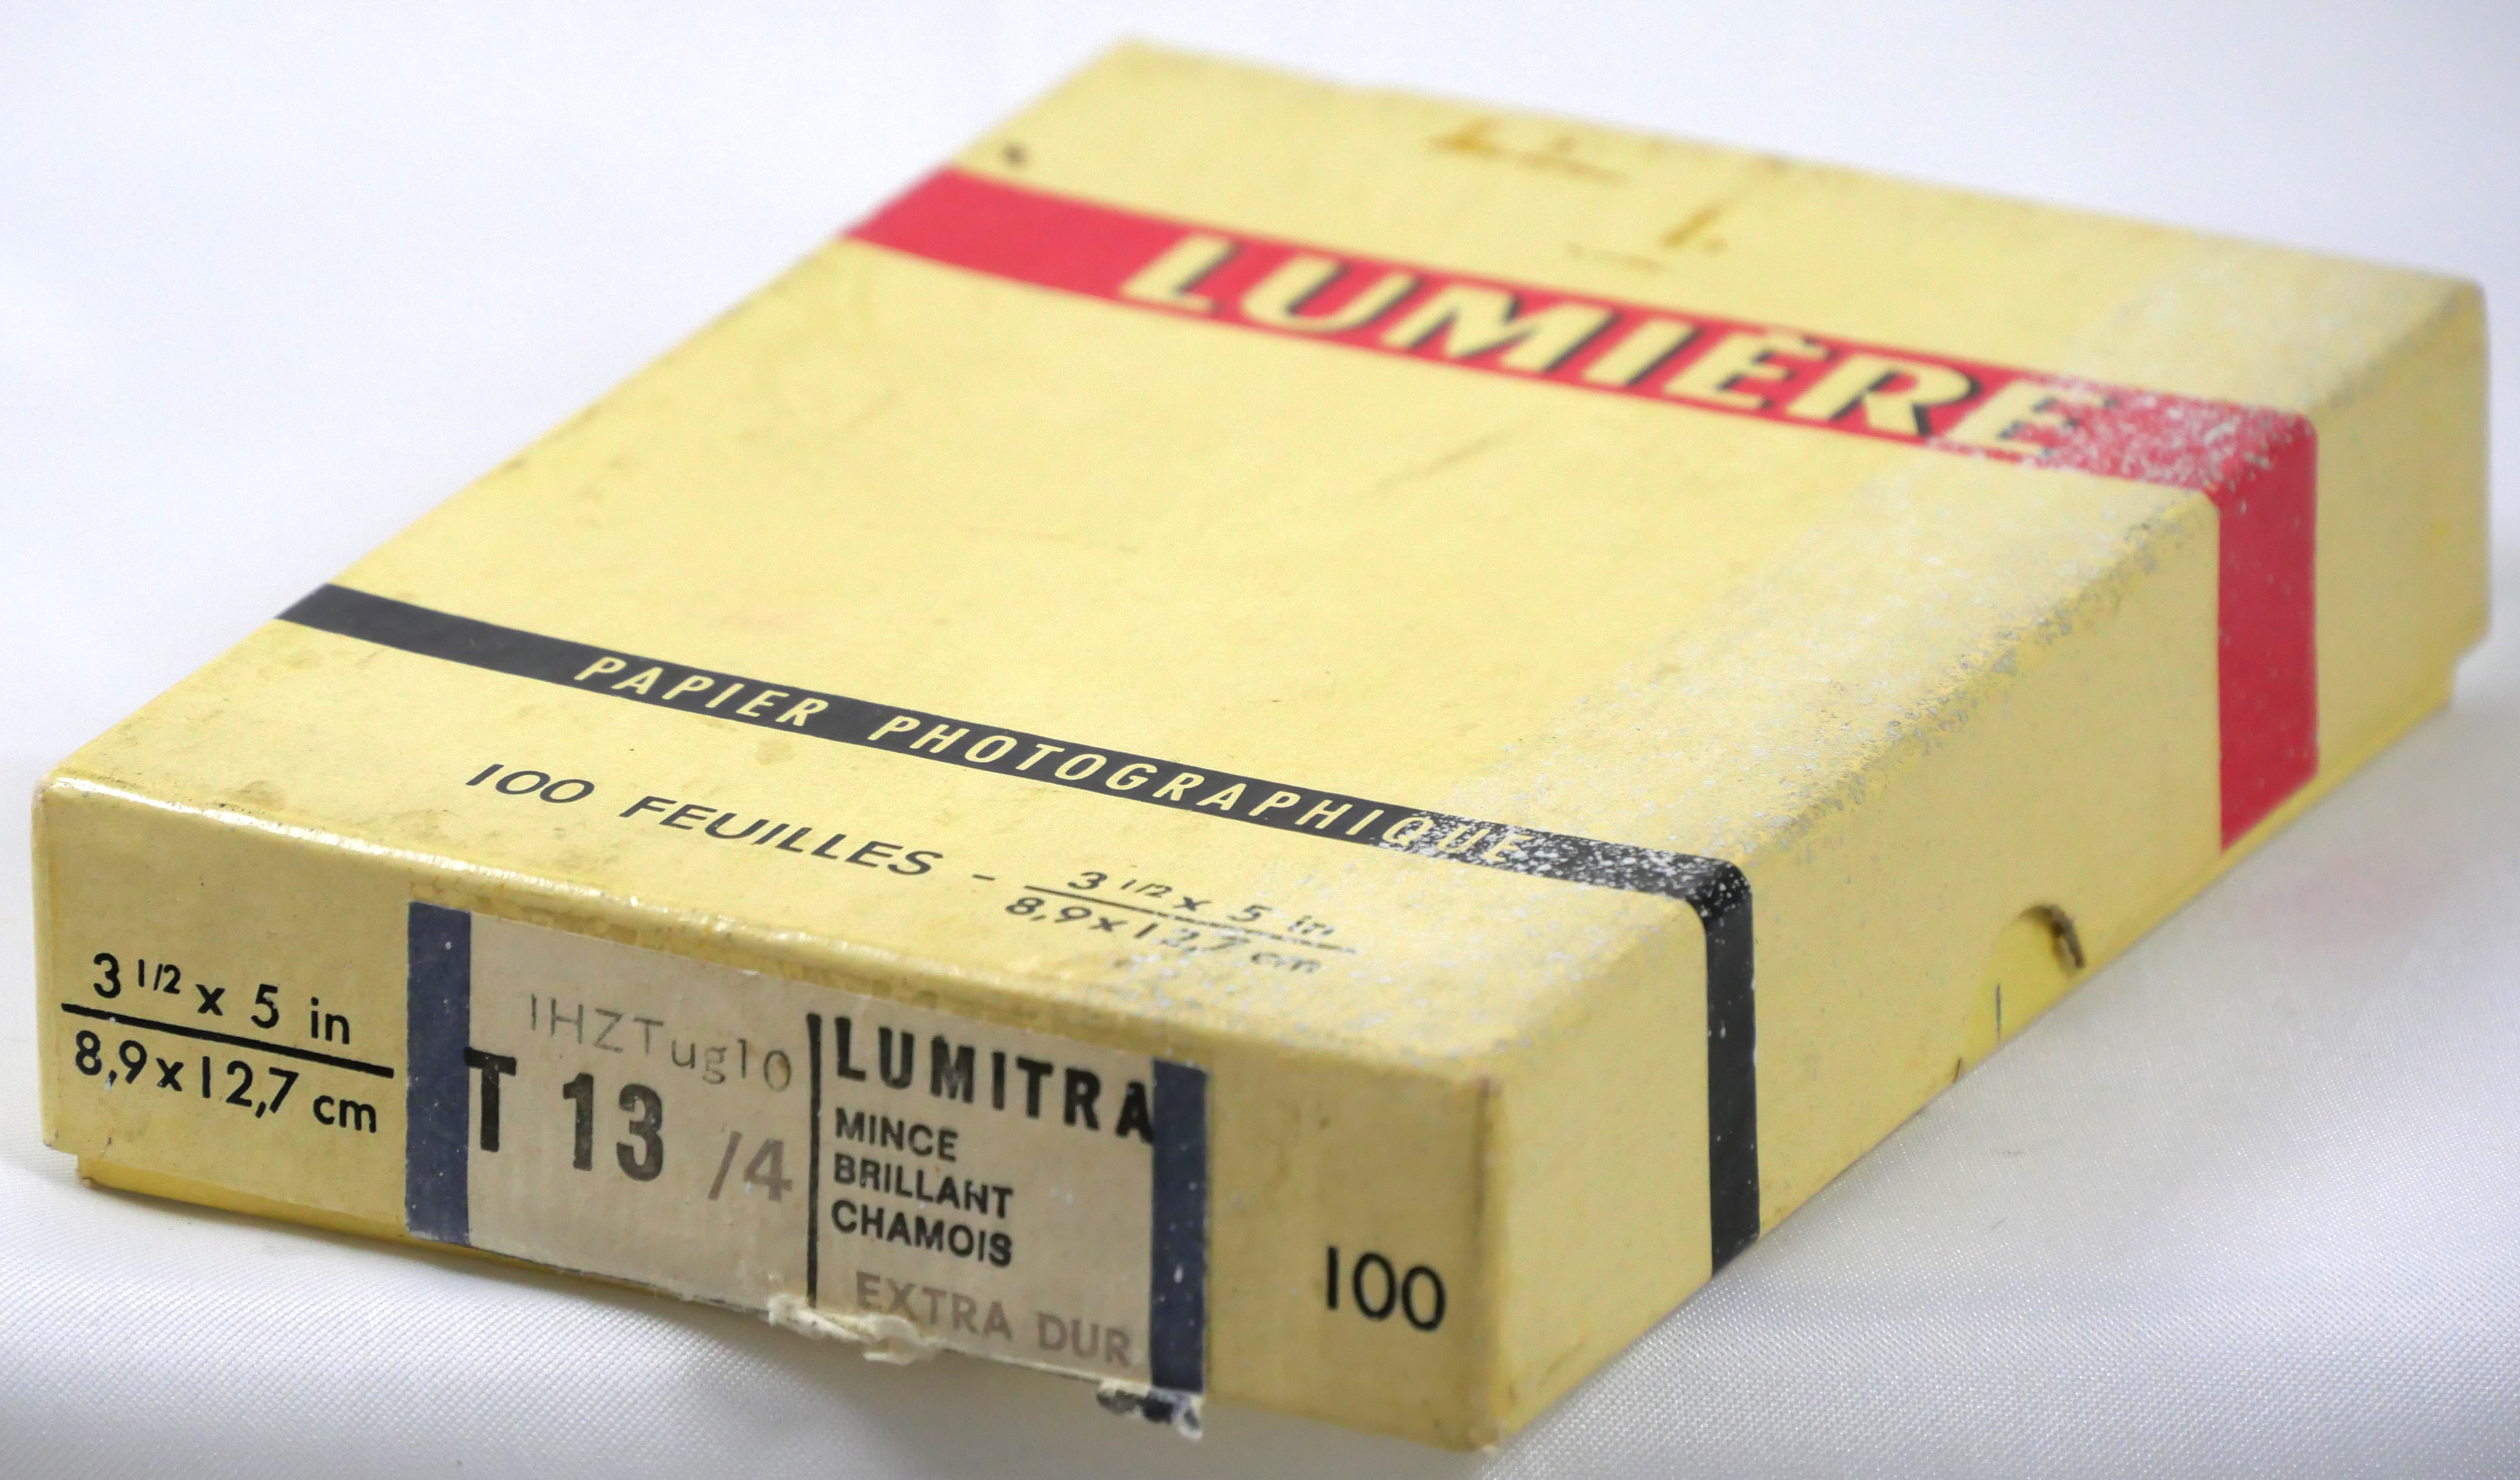 Sté Lumière - Lumitra T13-4 - Boîte 100 feuilles 8,9x12,7 cm